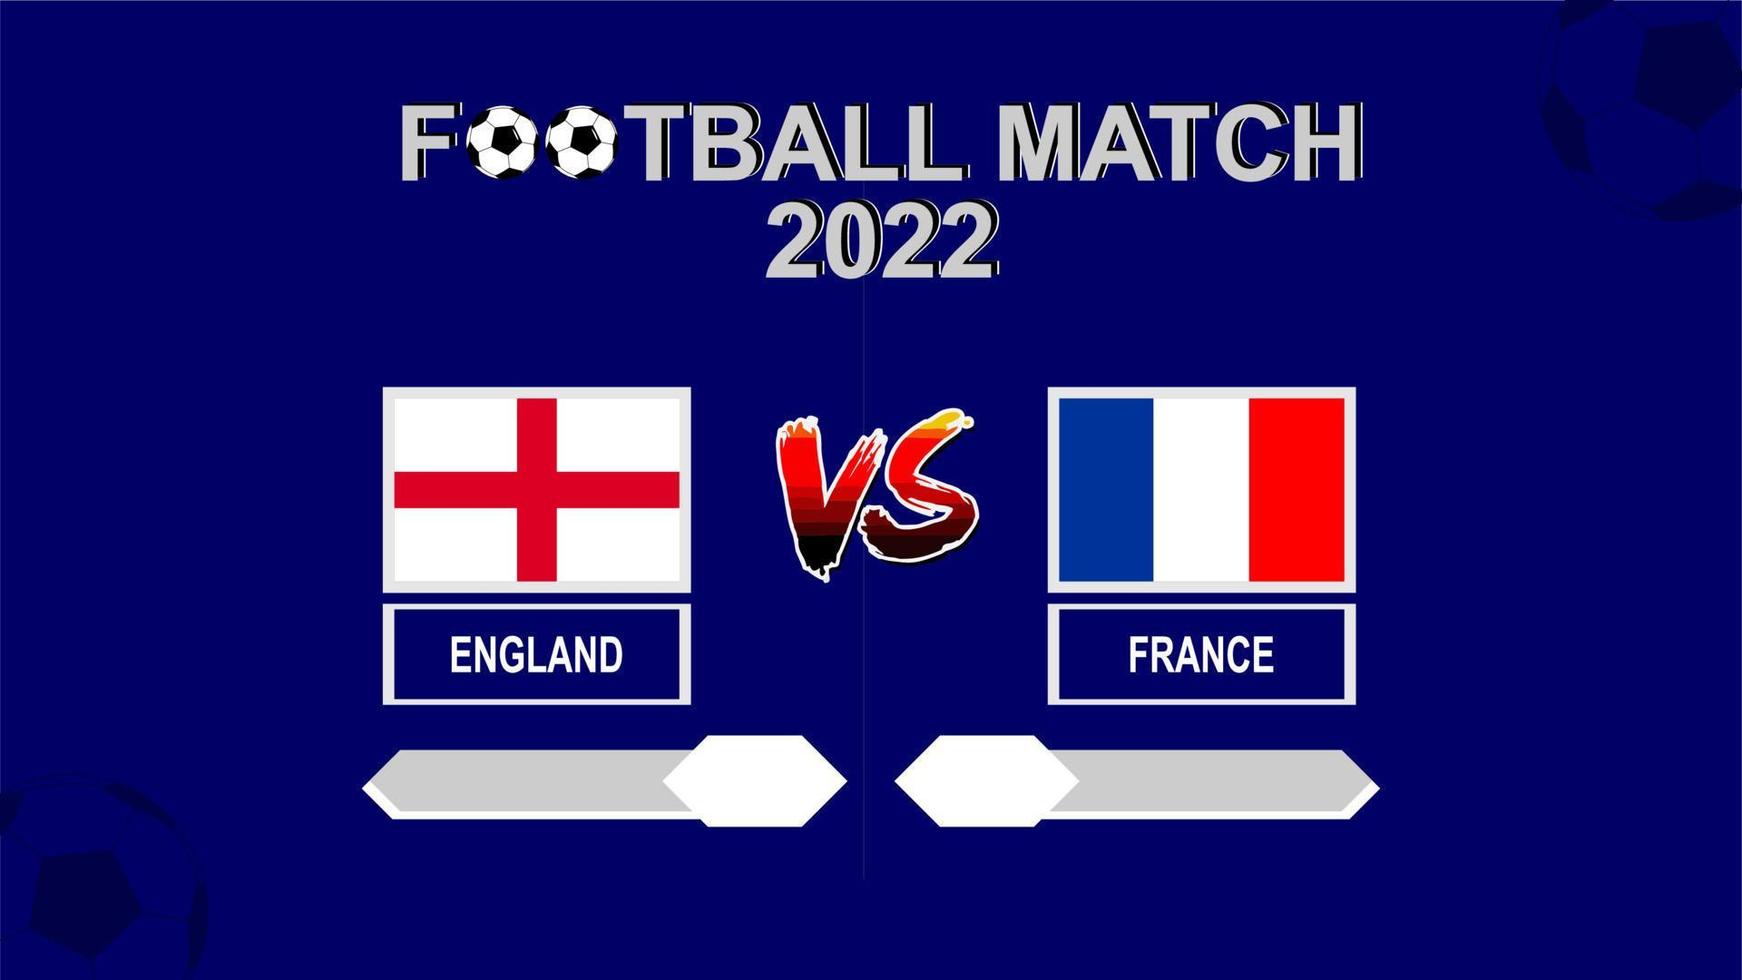 angleterre vs france coupe de football 2022 vecteur de fond de modèle bleu pour le calendrier ou le résultat match quart de finale